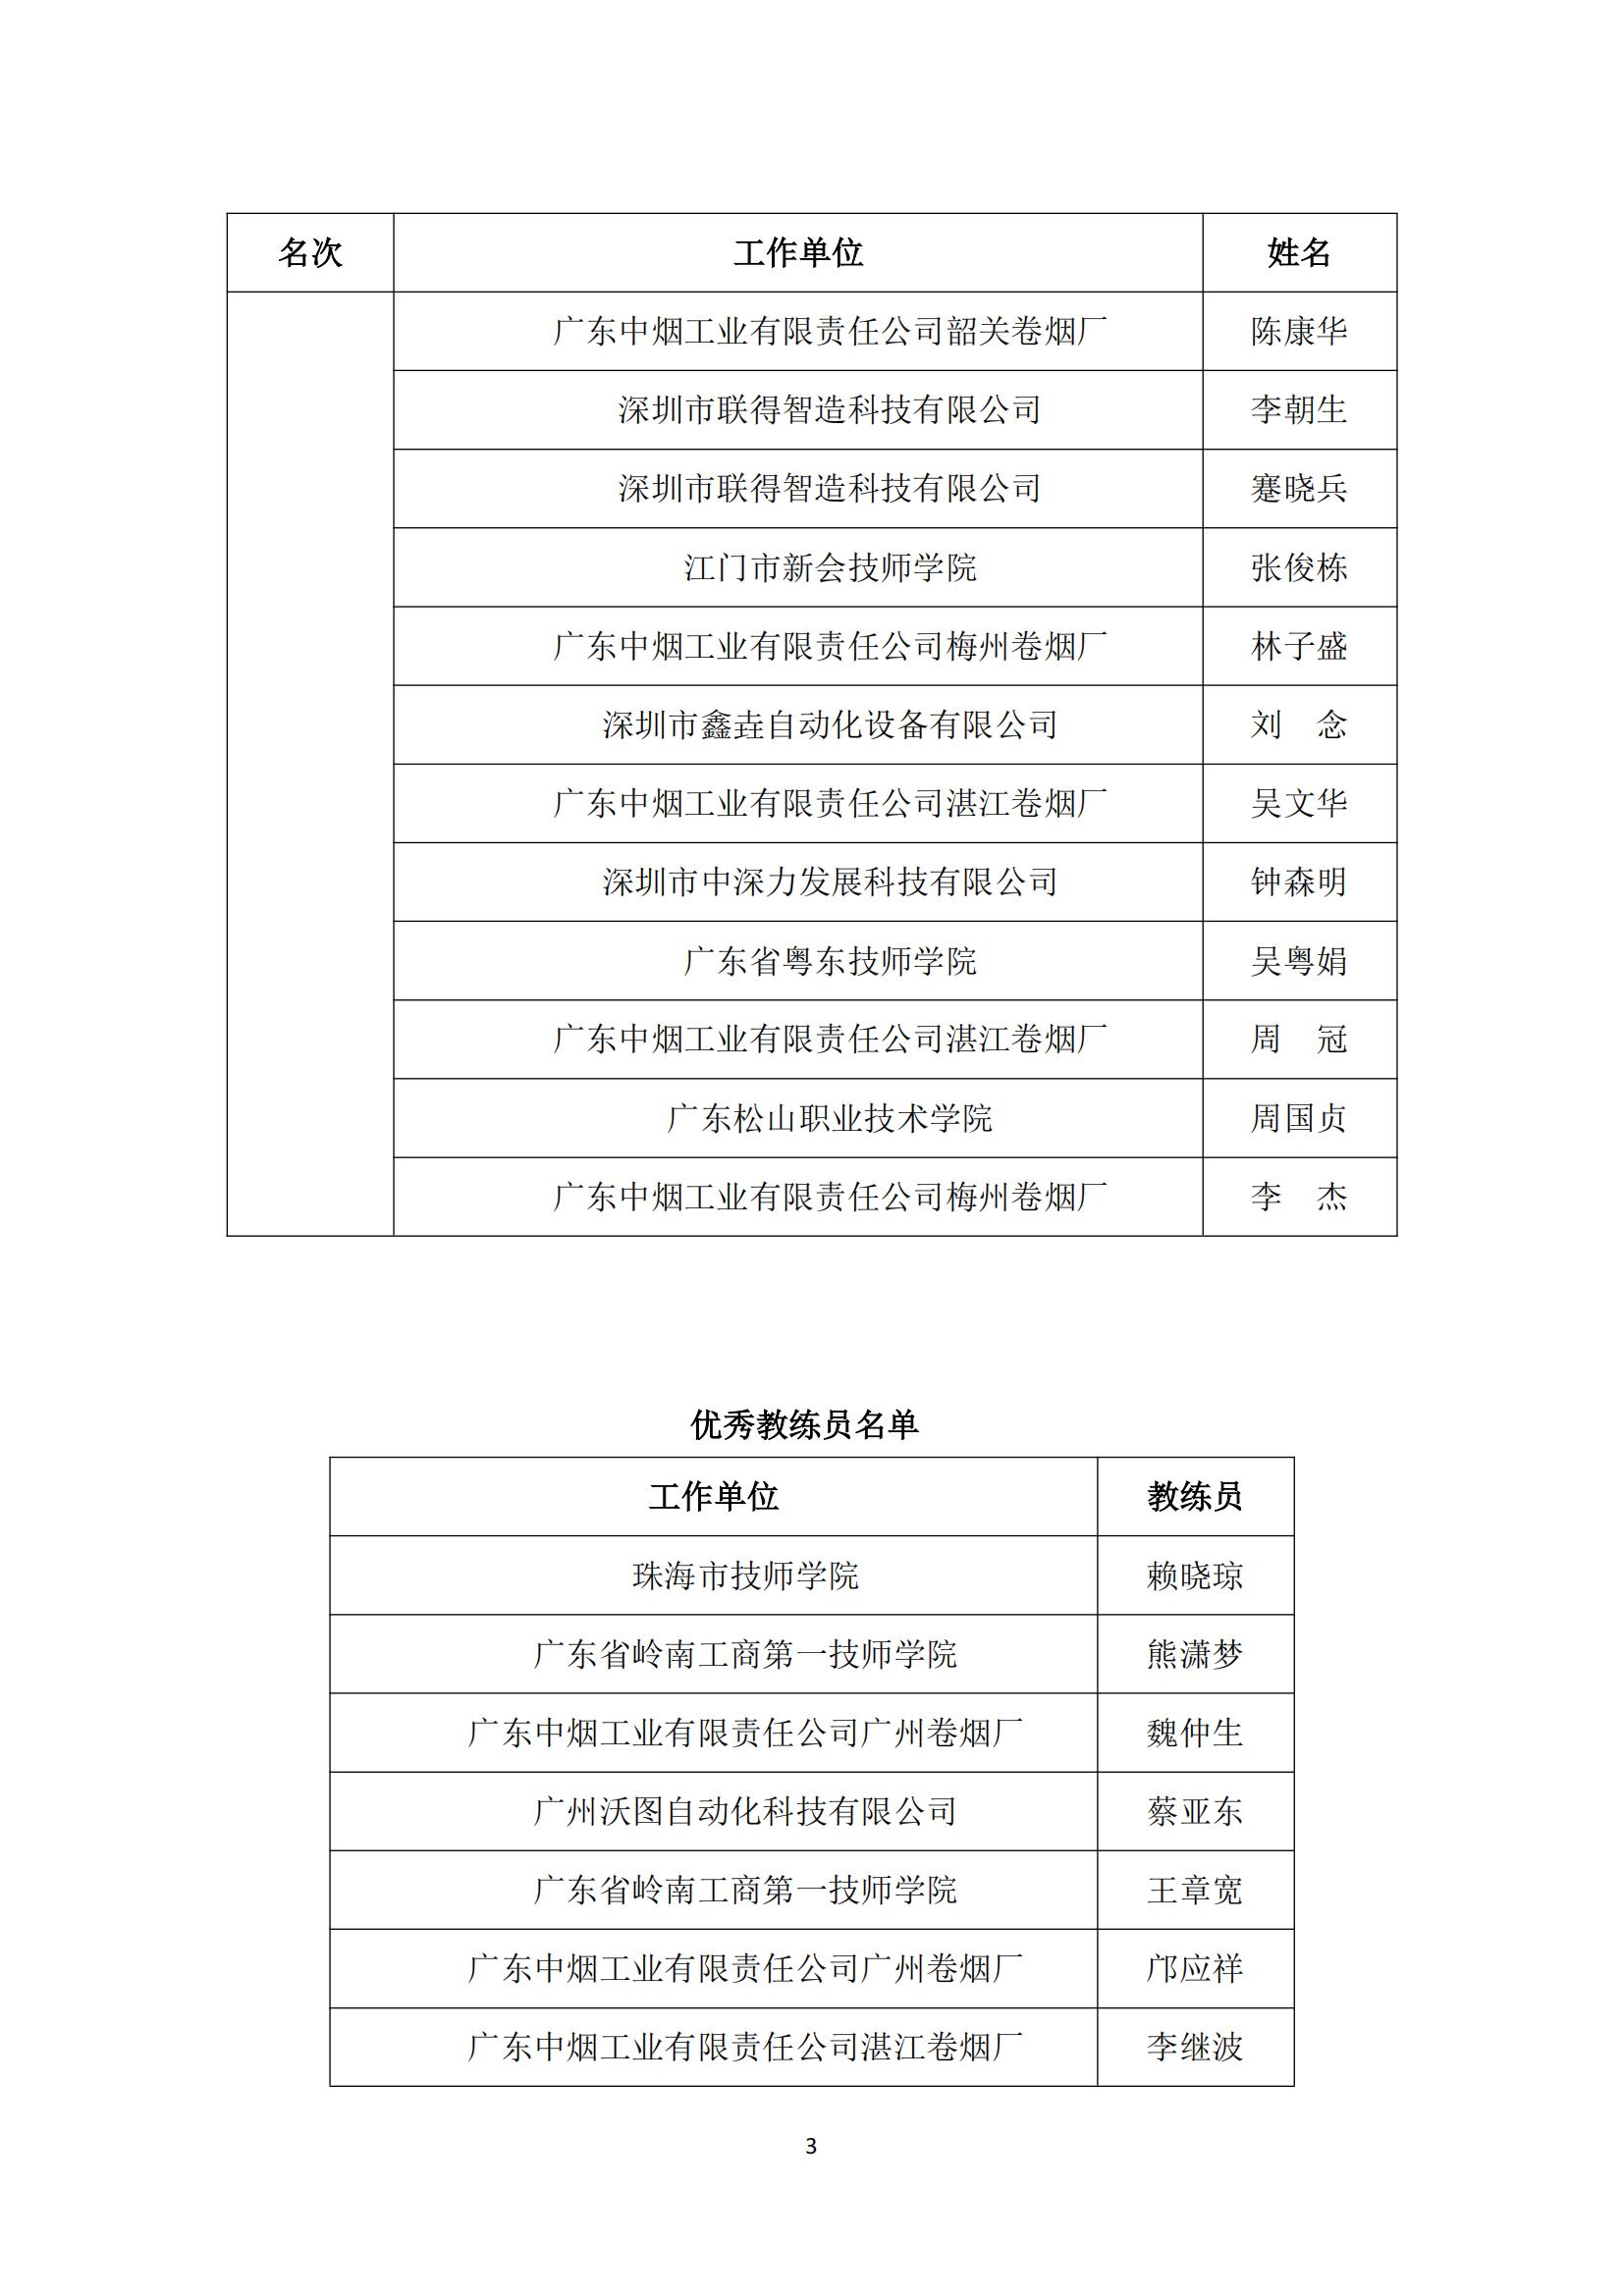 2021年广东省职业技能大赛——机电一体化职业技能竞赛获奖名单公布_02.jpg